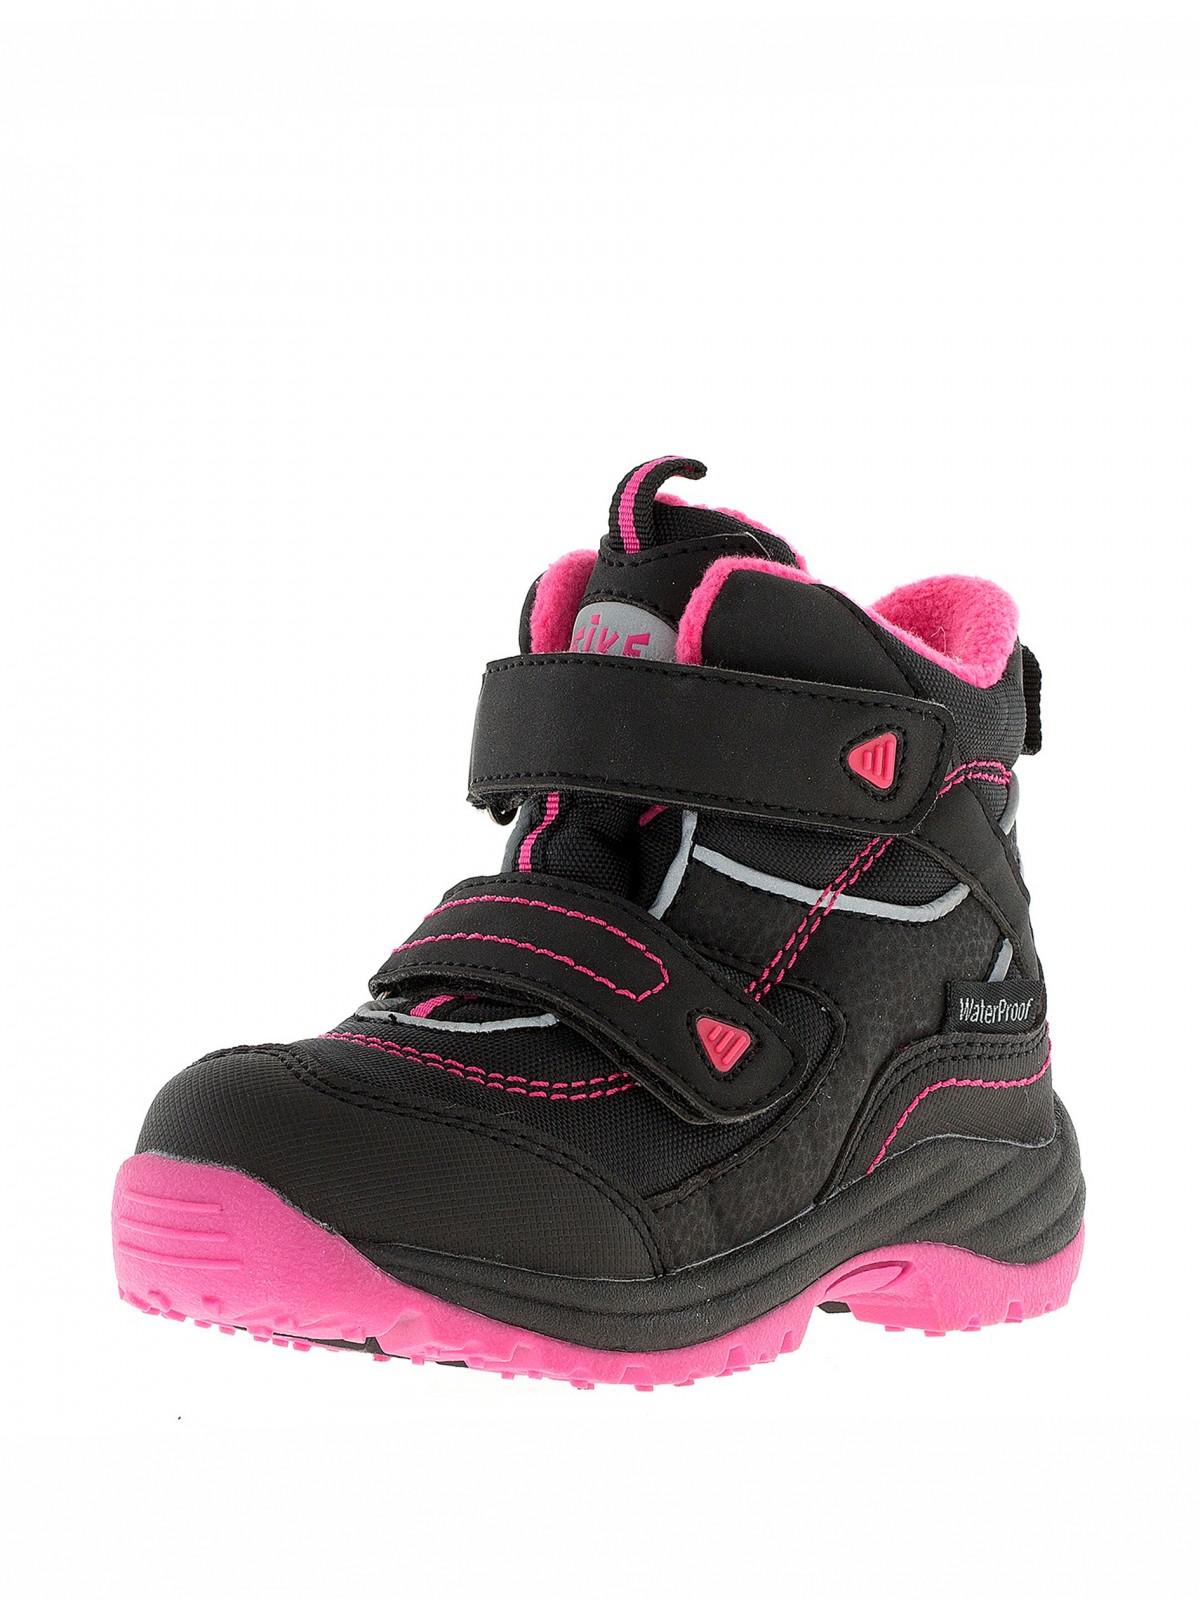 Демисезонная обувь для девочек. Ботинки Reike Basic. Ботинки Reike dg18-015 BS Purple. Reike ботинки демисезонные фиолетовые dg19-045 BS. Ботинки Reike детские 1-00187700.